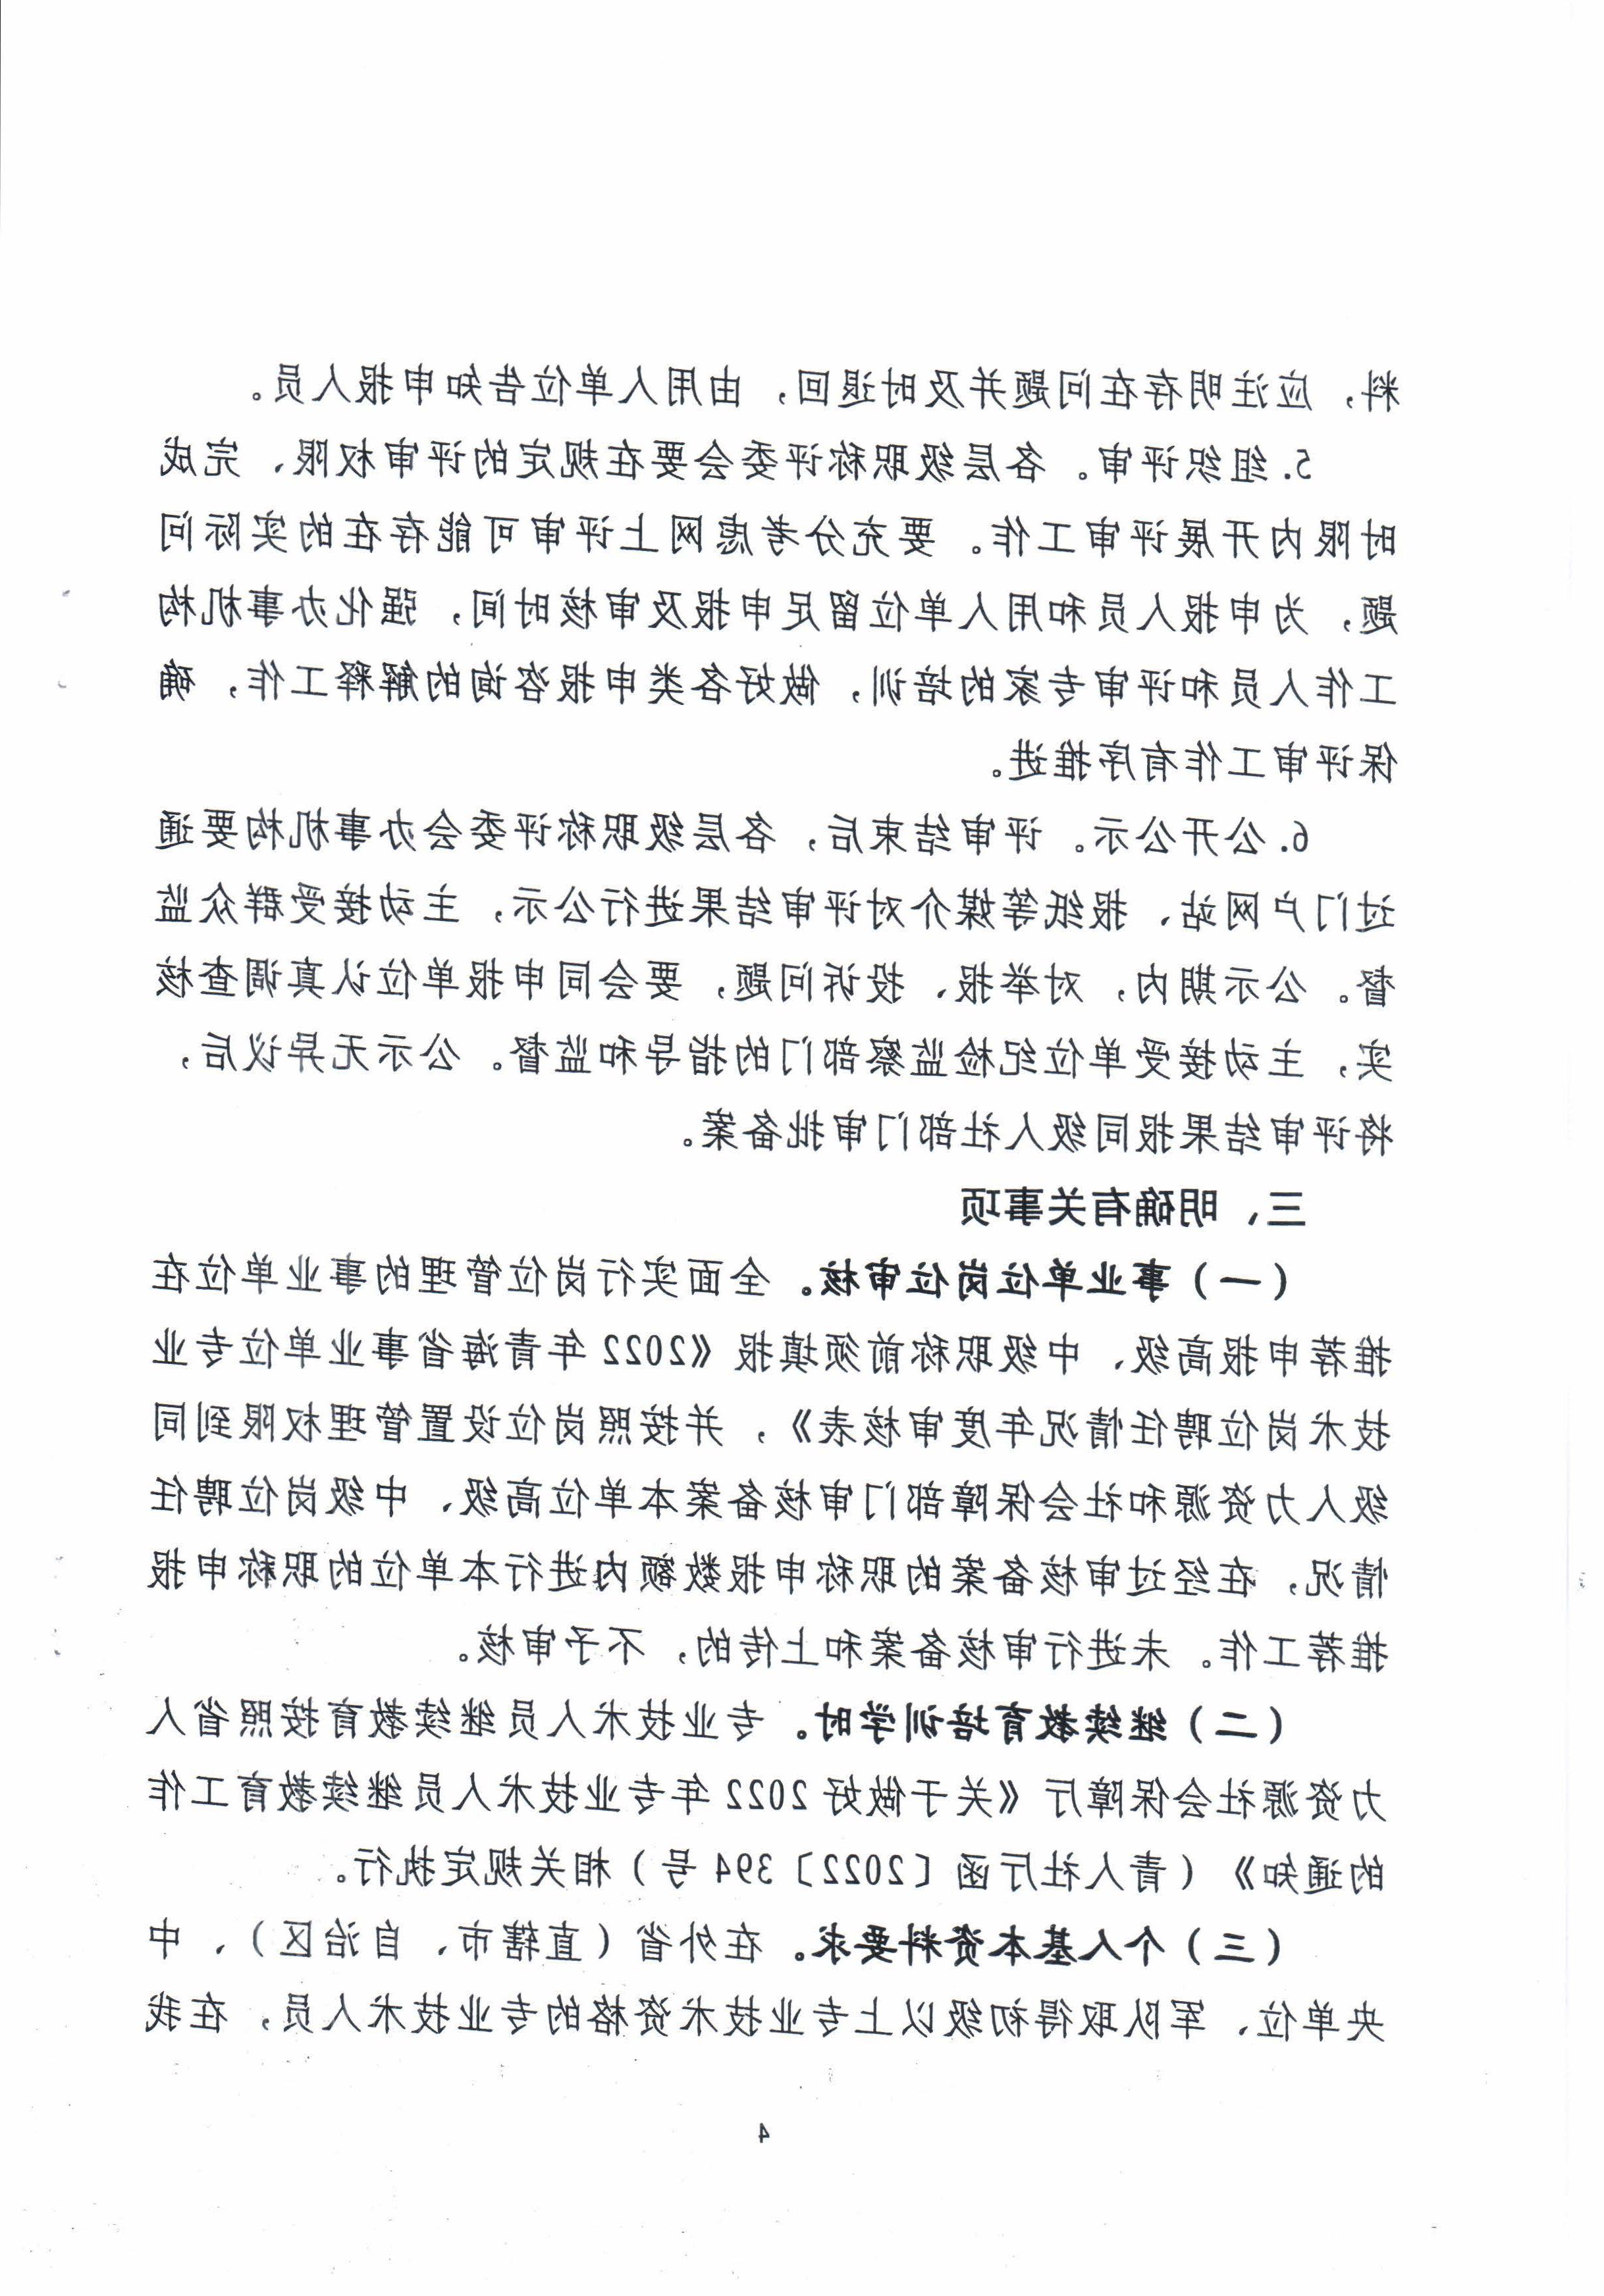 青海省住房和城乡建设厅关于开展2022年度建设工程系列职称评审工作的通知_页面_4.jpg